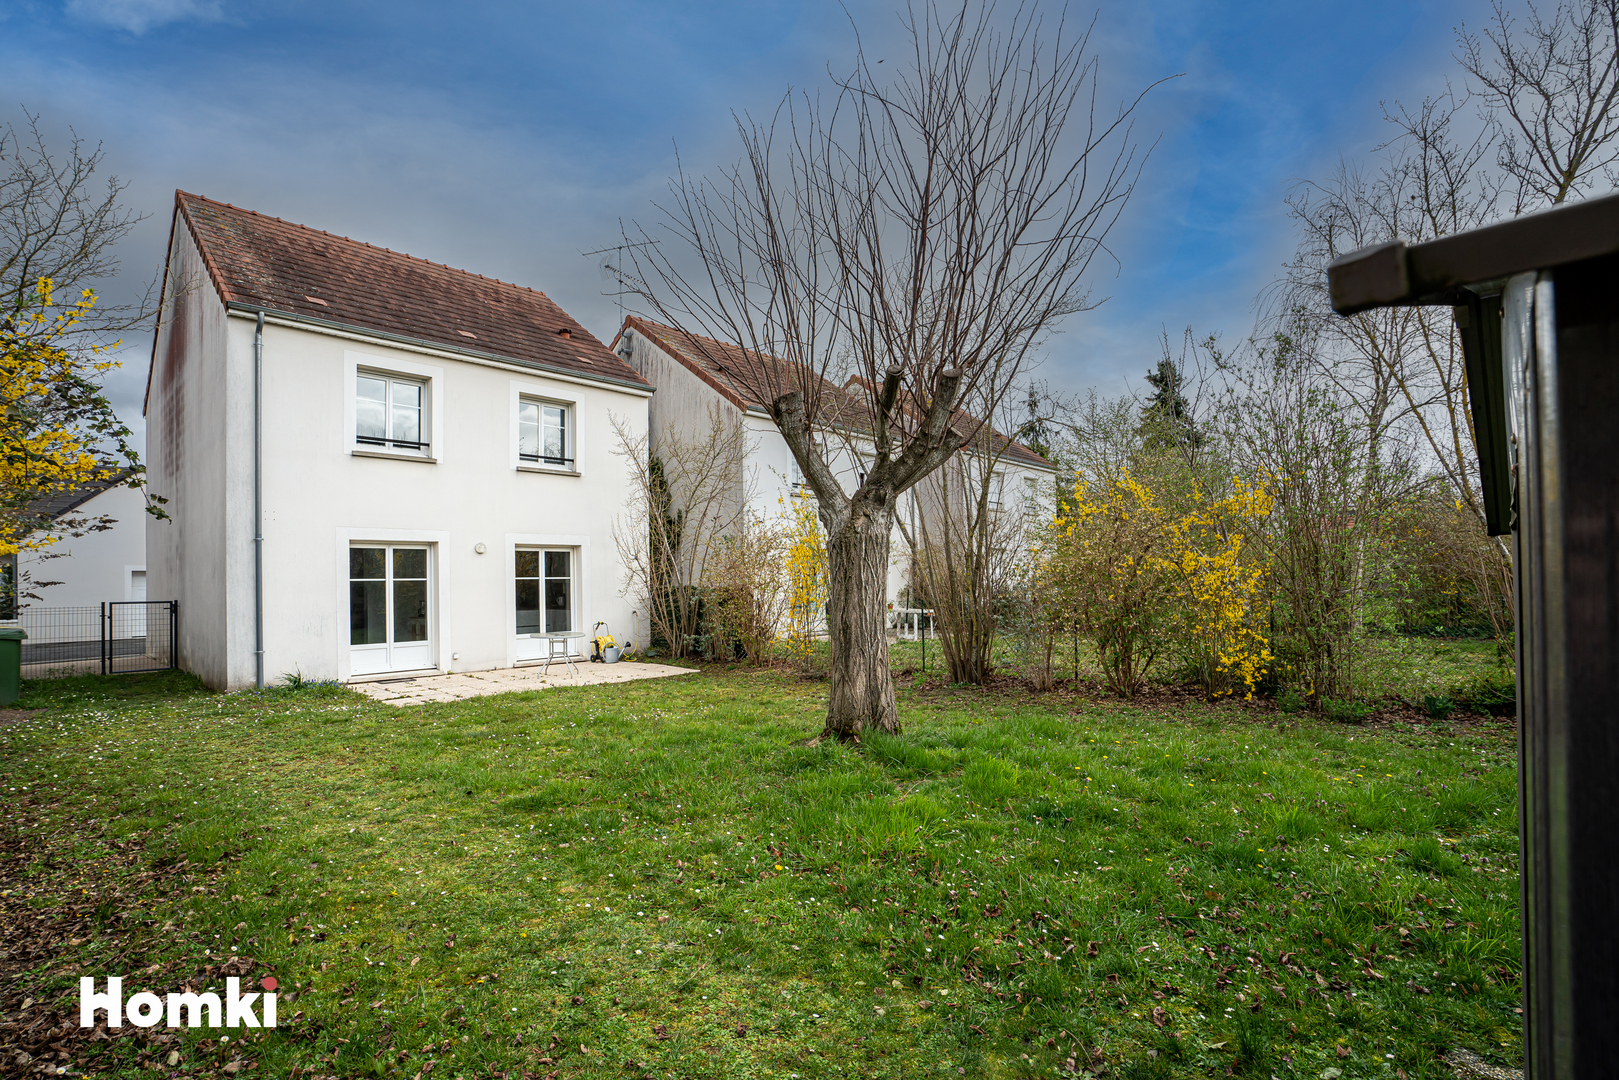 Homki - Vente Maison/villa  de 97.0 m² à Fleury-les-Aubrais 45400